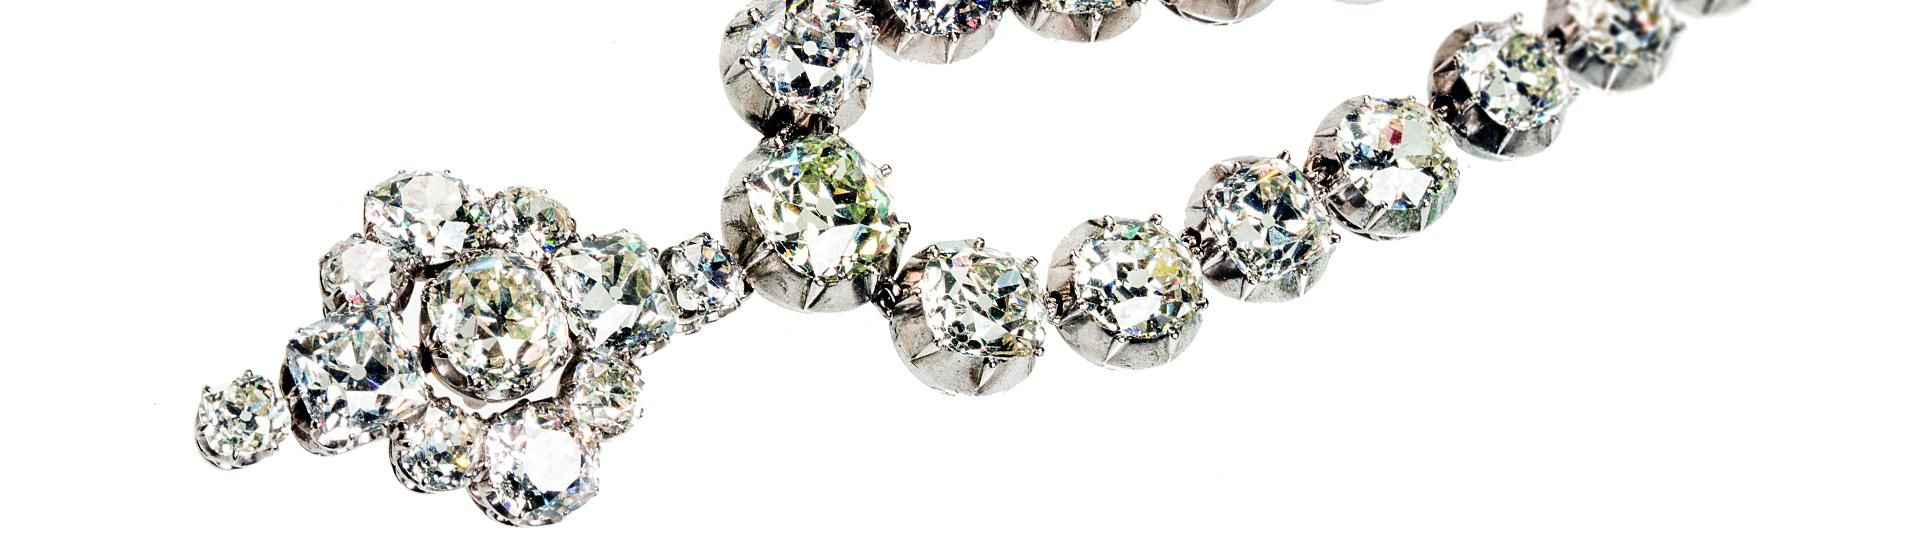 Diamond necklace close up 2020